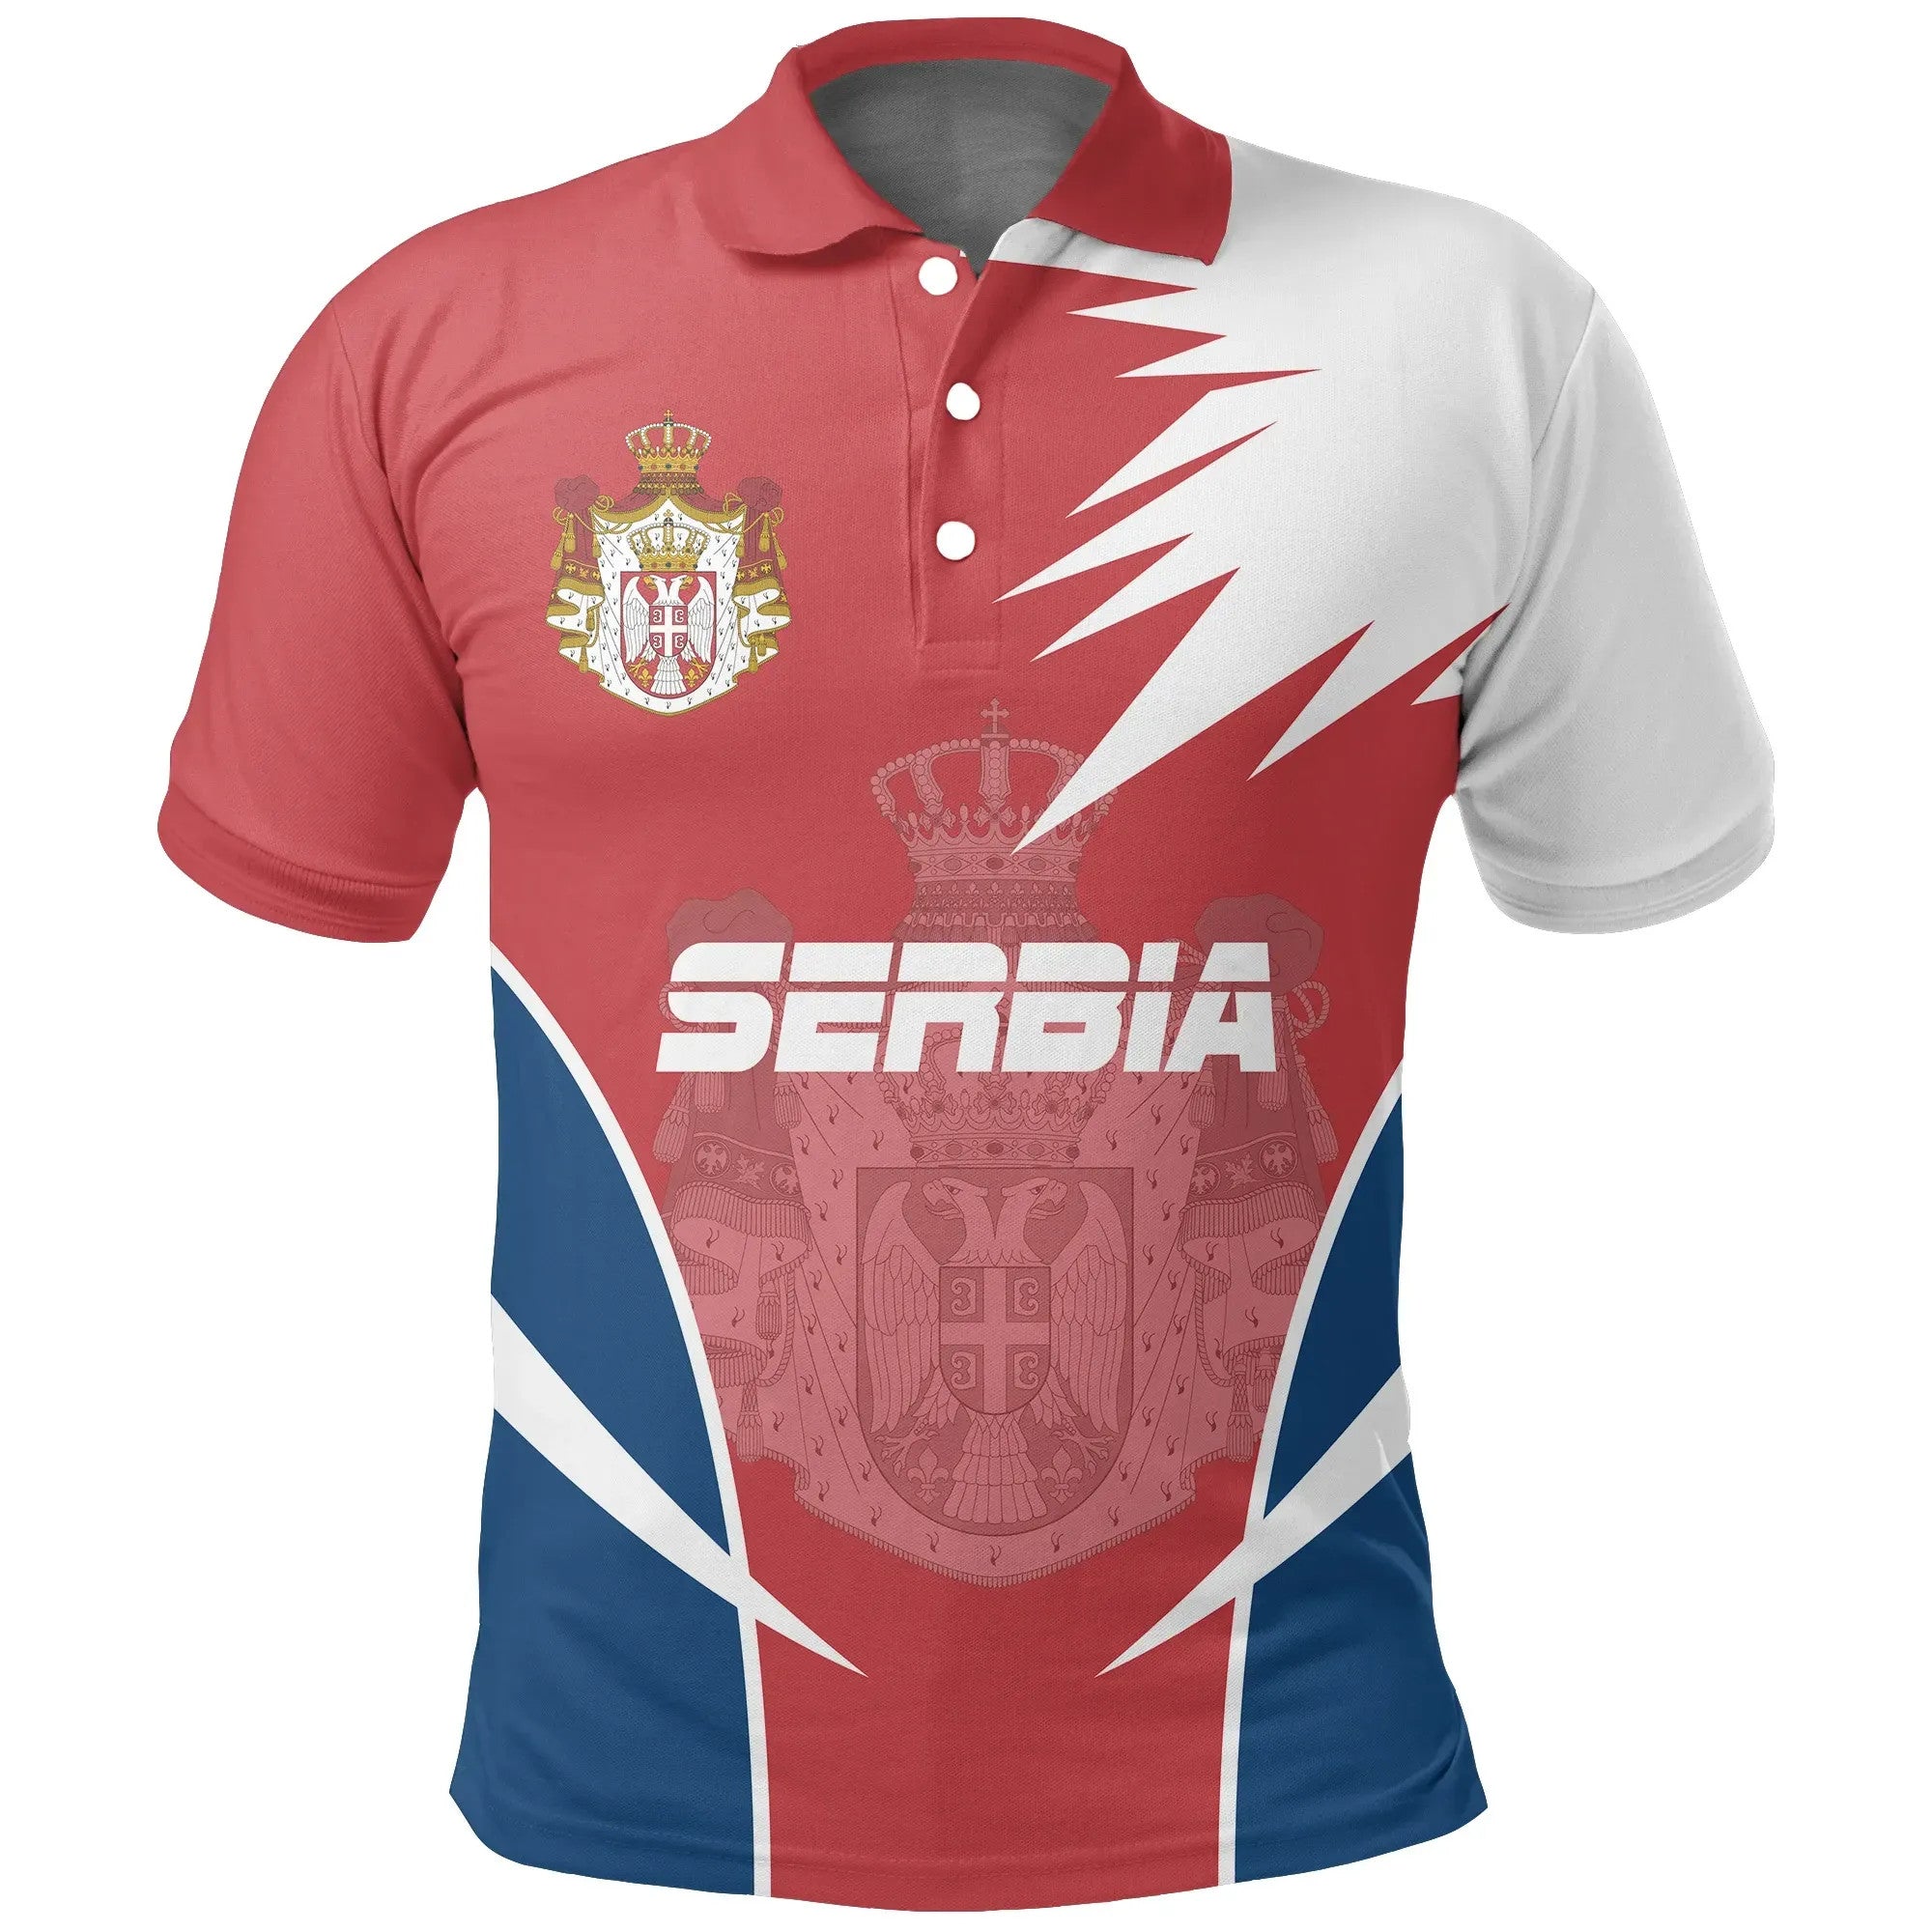 serbia-polo-shirt-active